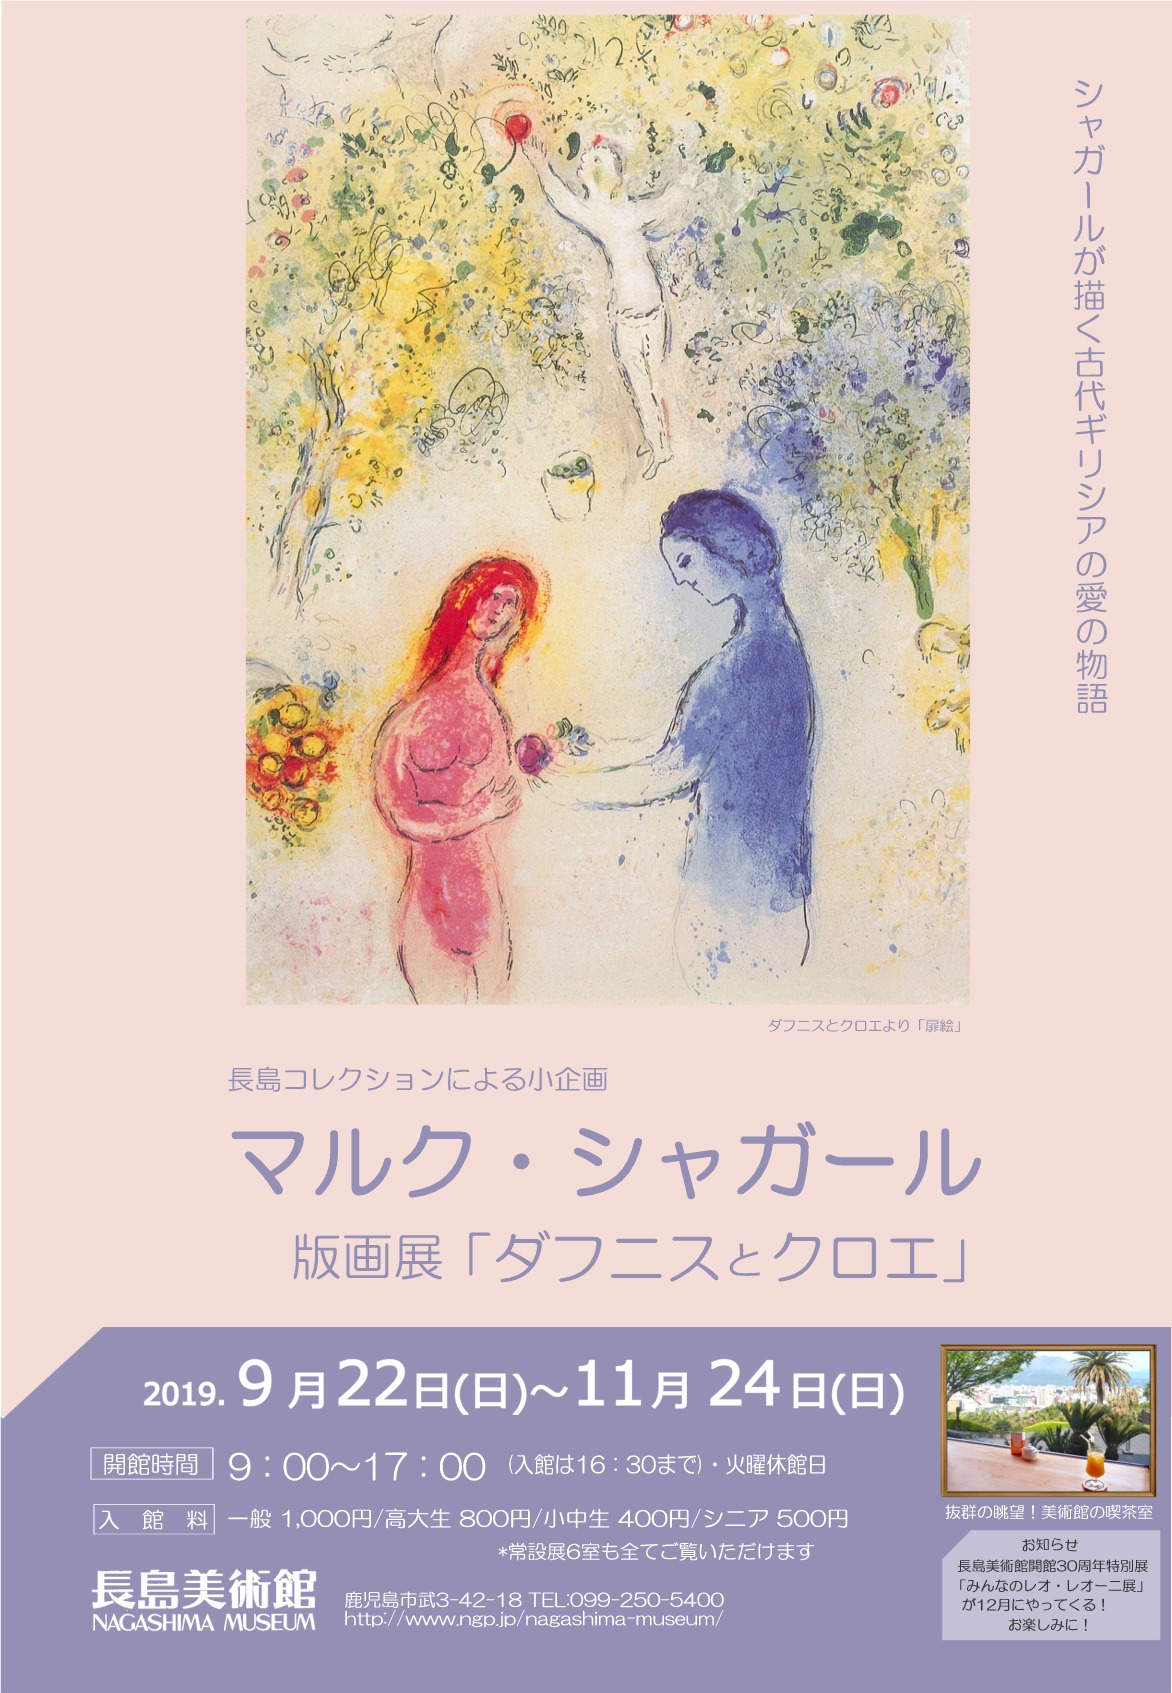 長島コレクションによる小企画 マルク シャガール版画展 ダフニスとクロエ かごしま文化情報センター Kcic